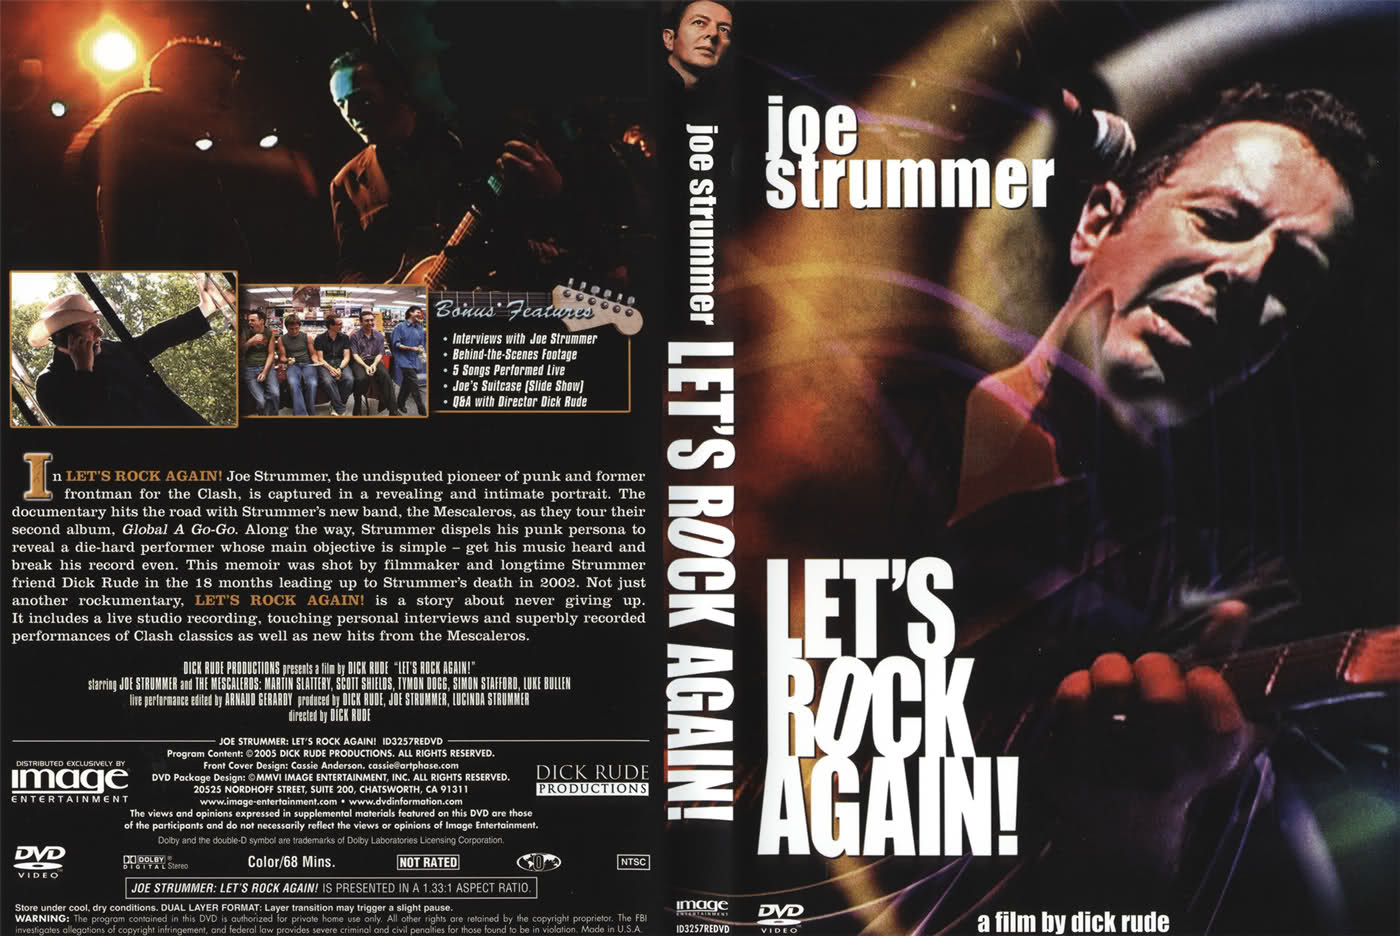 [satutigadelapan] Joe Strummer Lets Rock Again